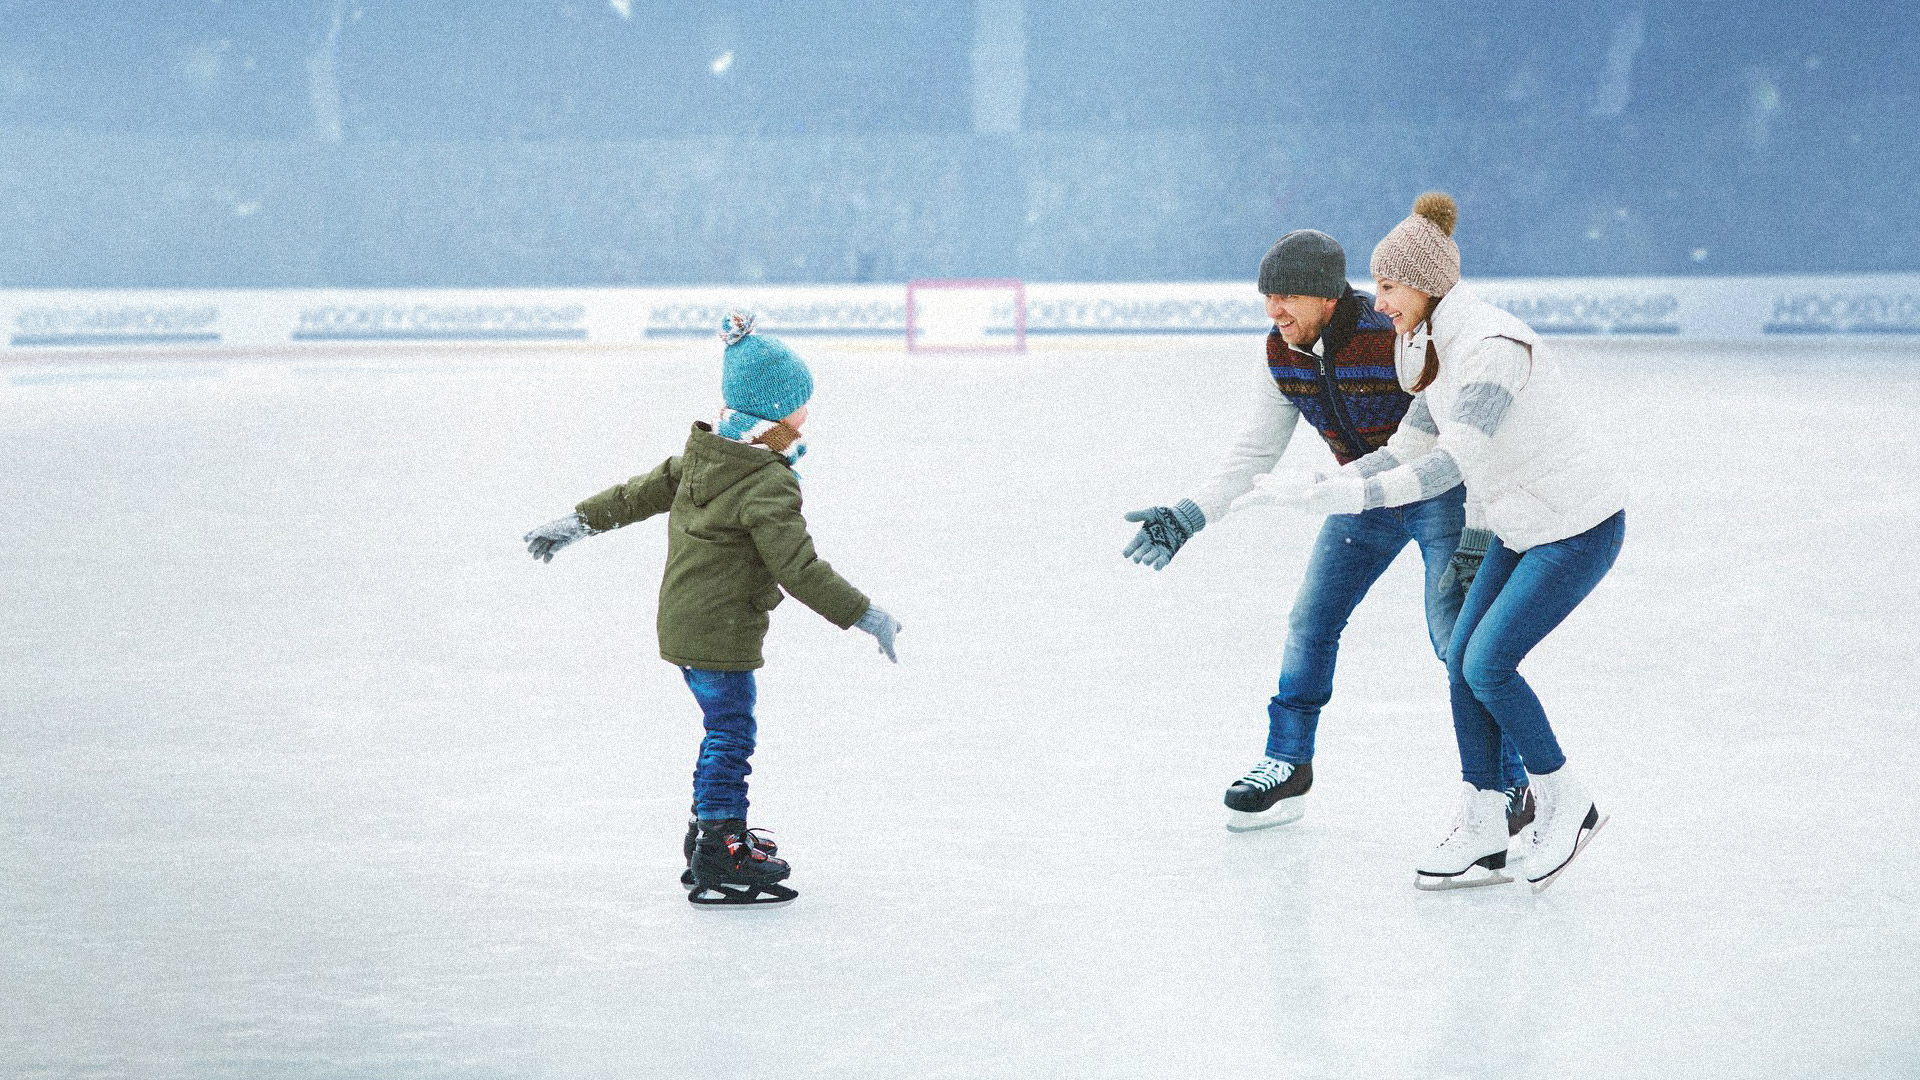 Kviečiame į Kauno ledo rūmų čiuožyklą! / Taip pat Kauno ledo rūmuose kviečiame išbandyti badmintoną!